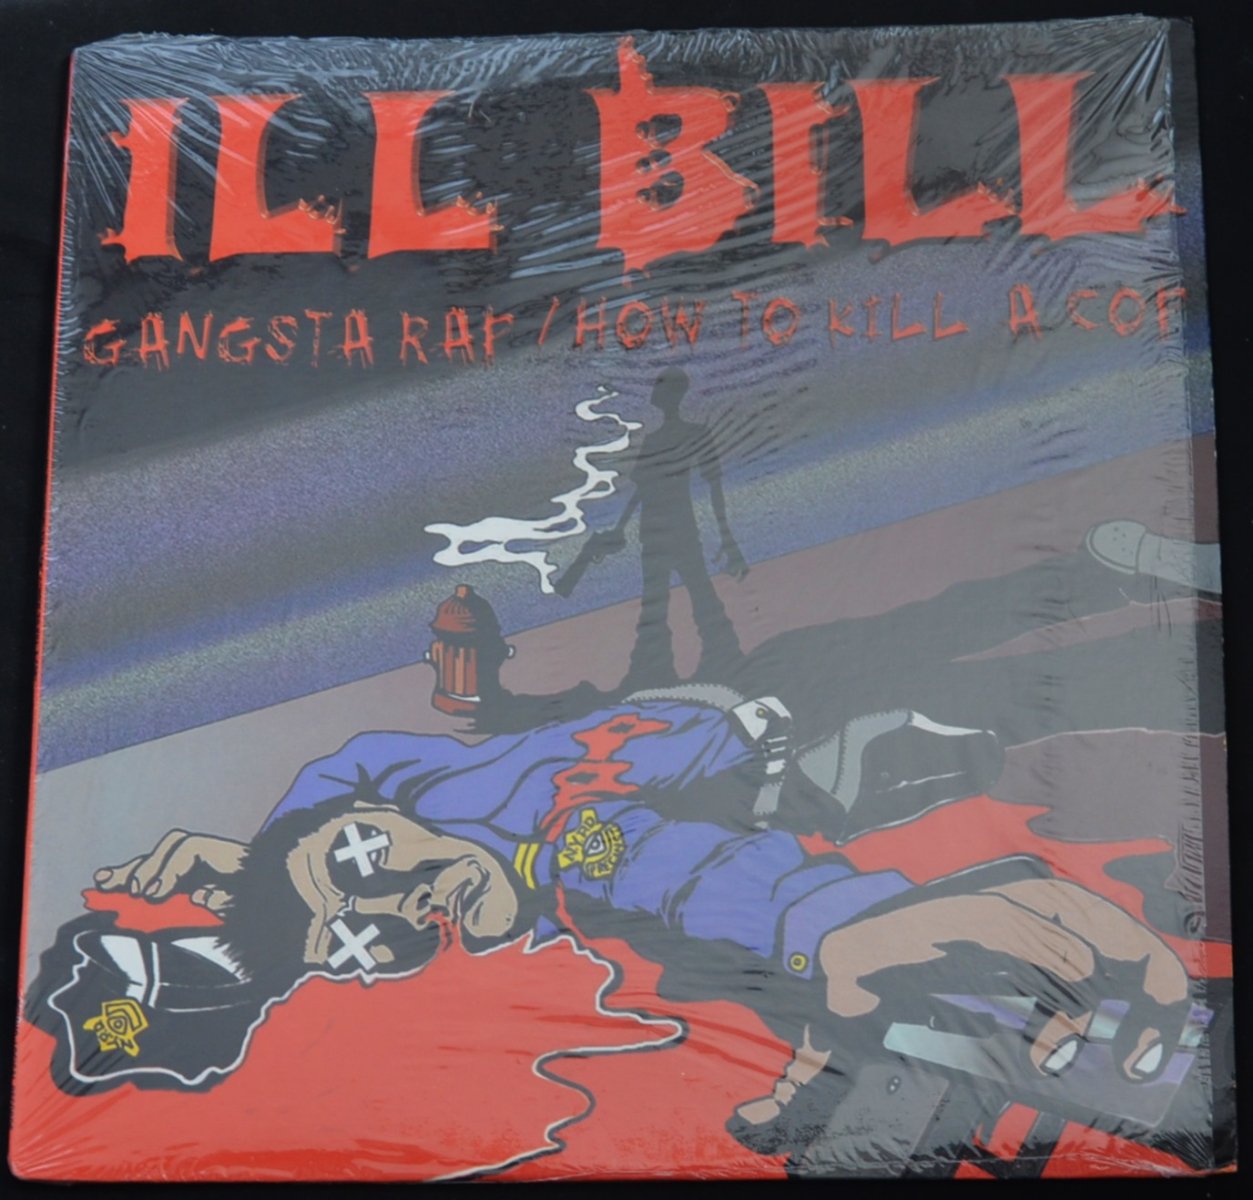 ILL BILL / GANGSTA RAP / HOW TO KILL A COP (12